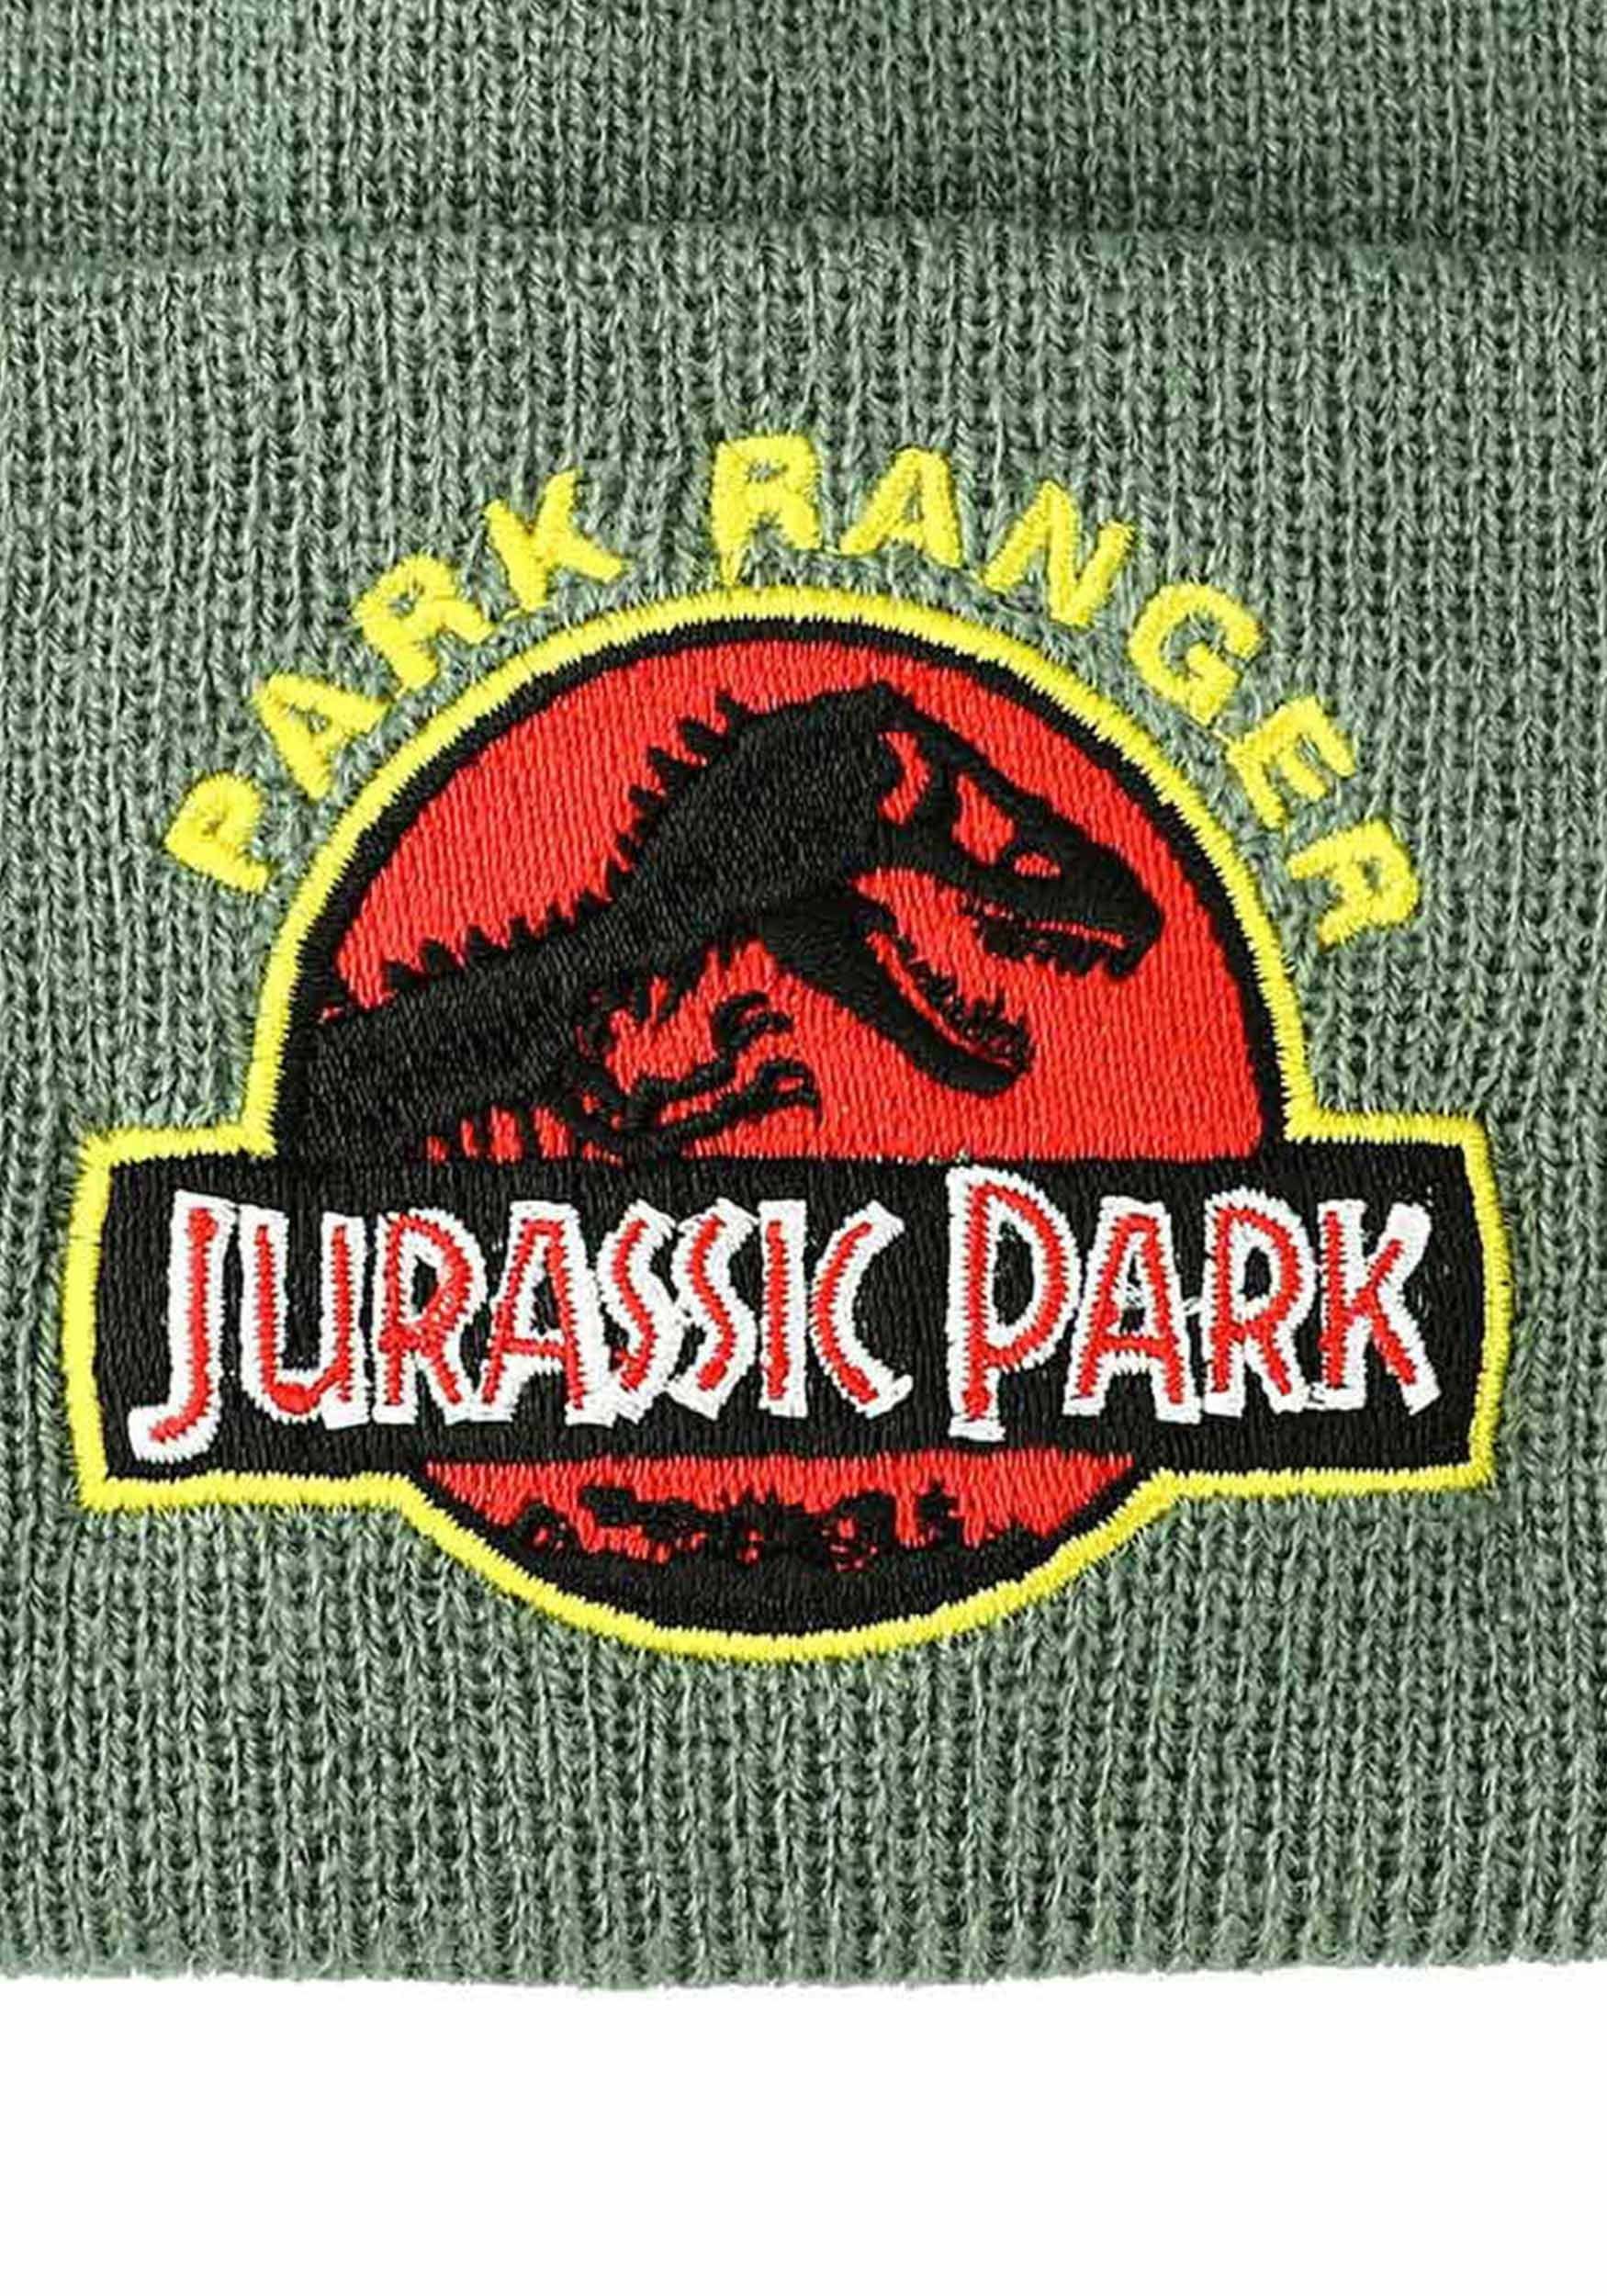 Jurassic Park Ranger Cuff Beanie | Beanies